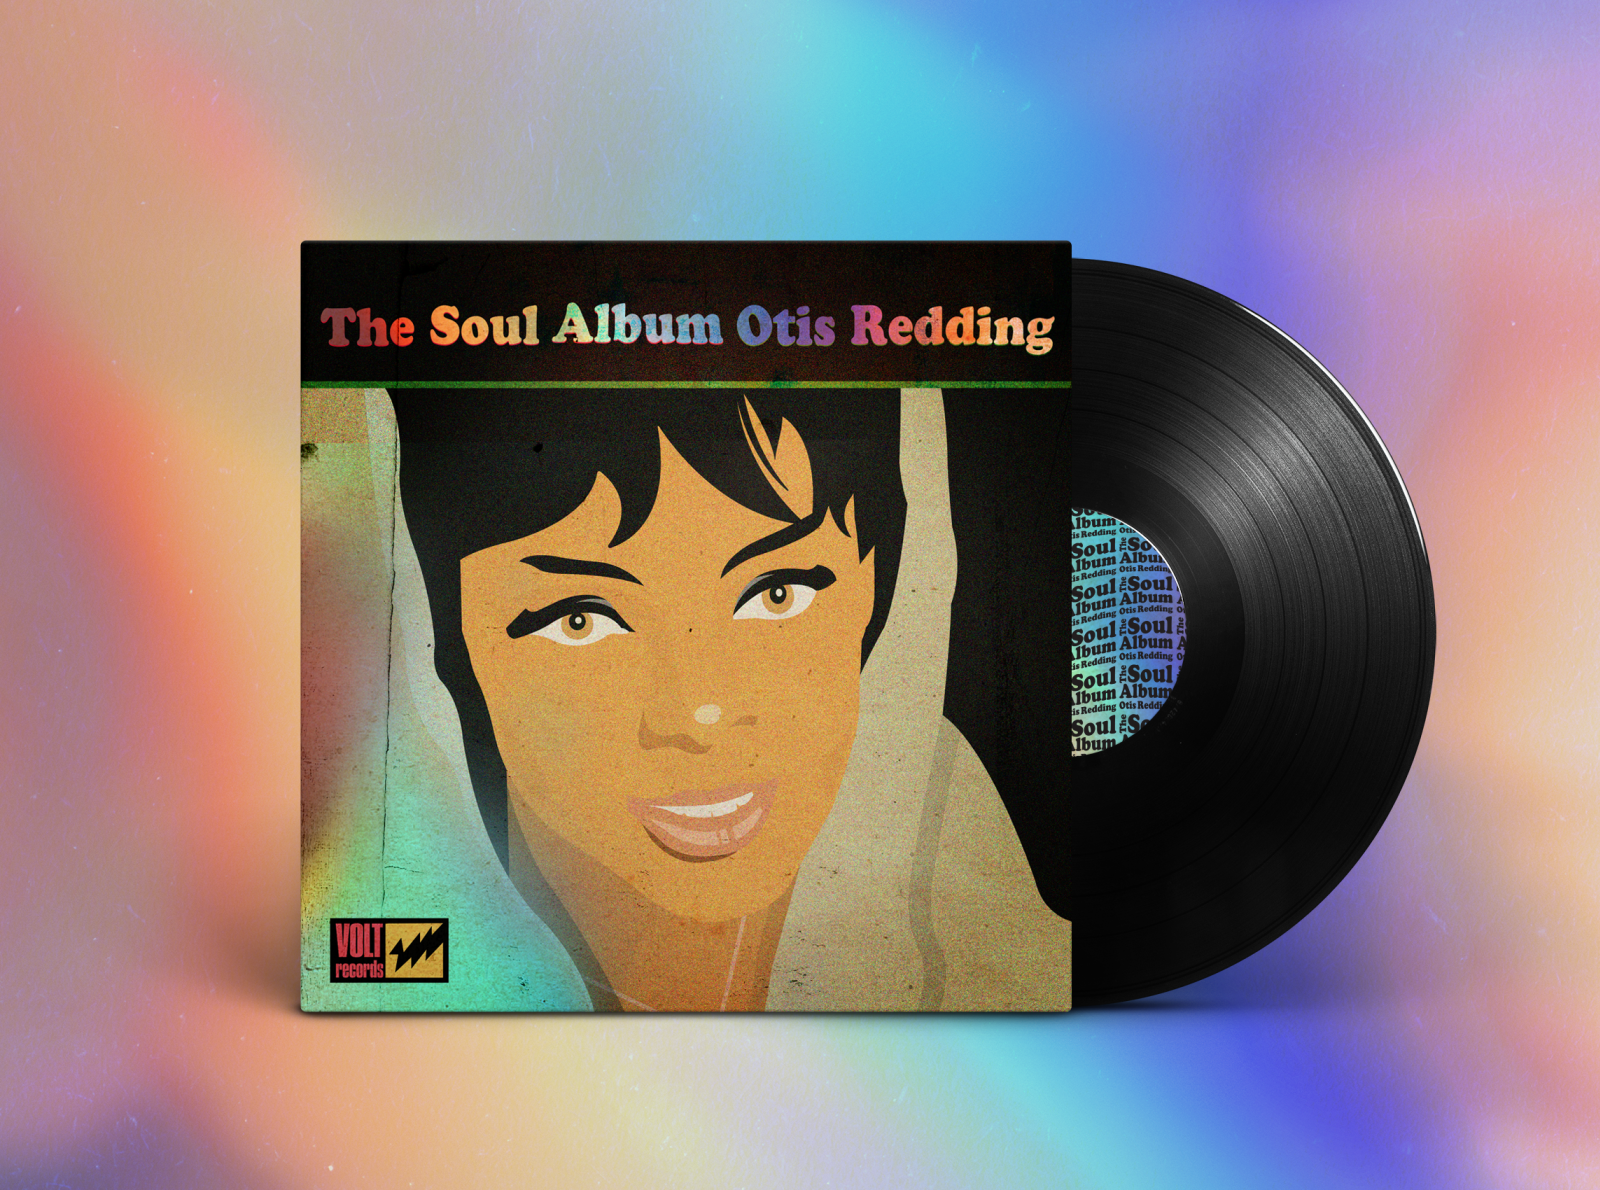 The Soul Otis Redding by Jon Giebler Dribbble